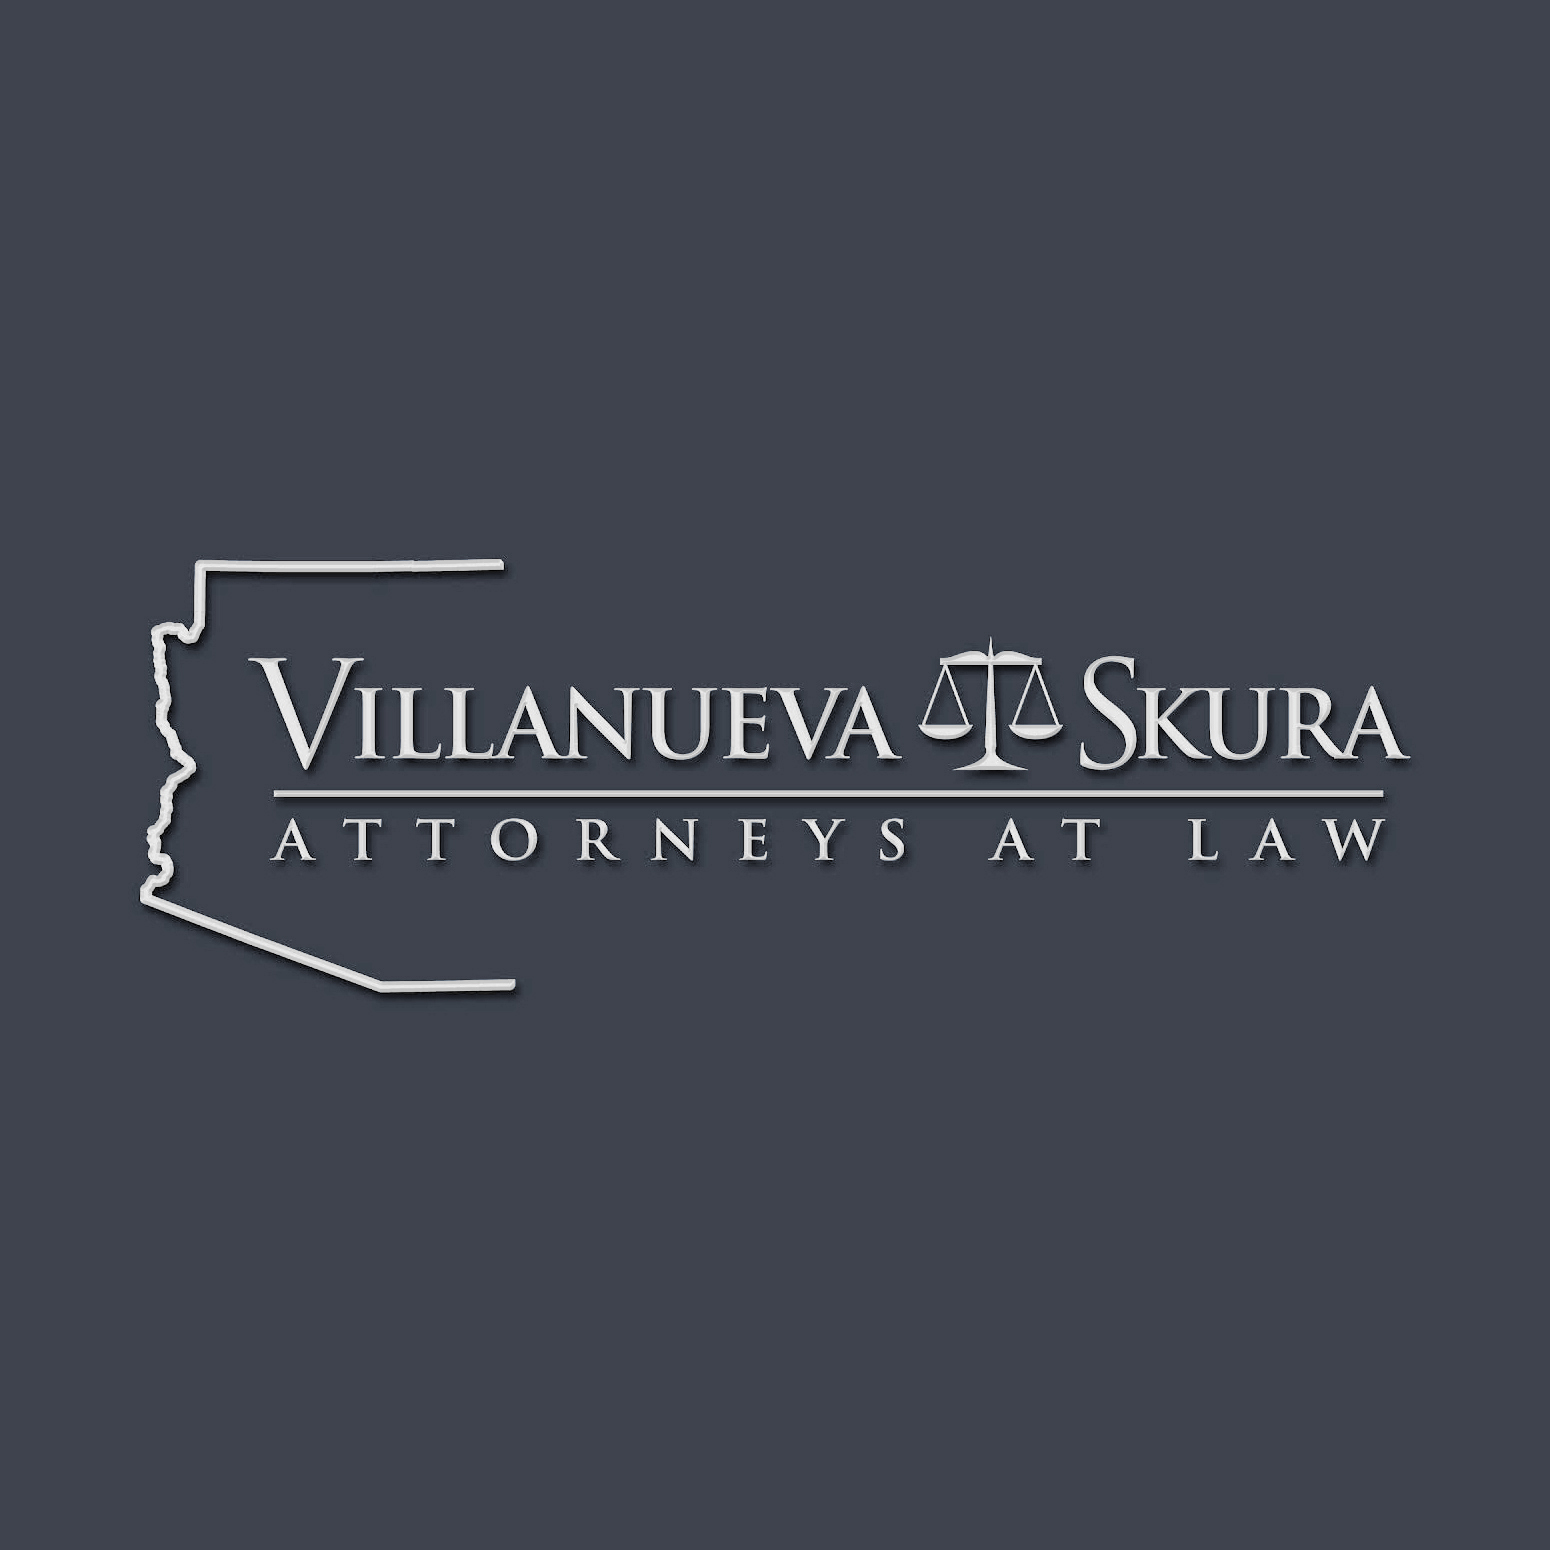 Villanueva Skura Attorneys at law